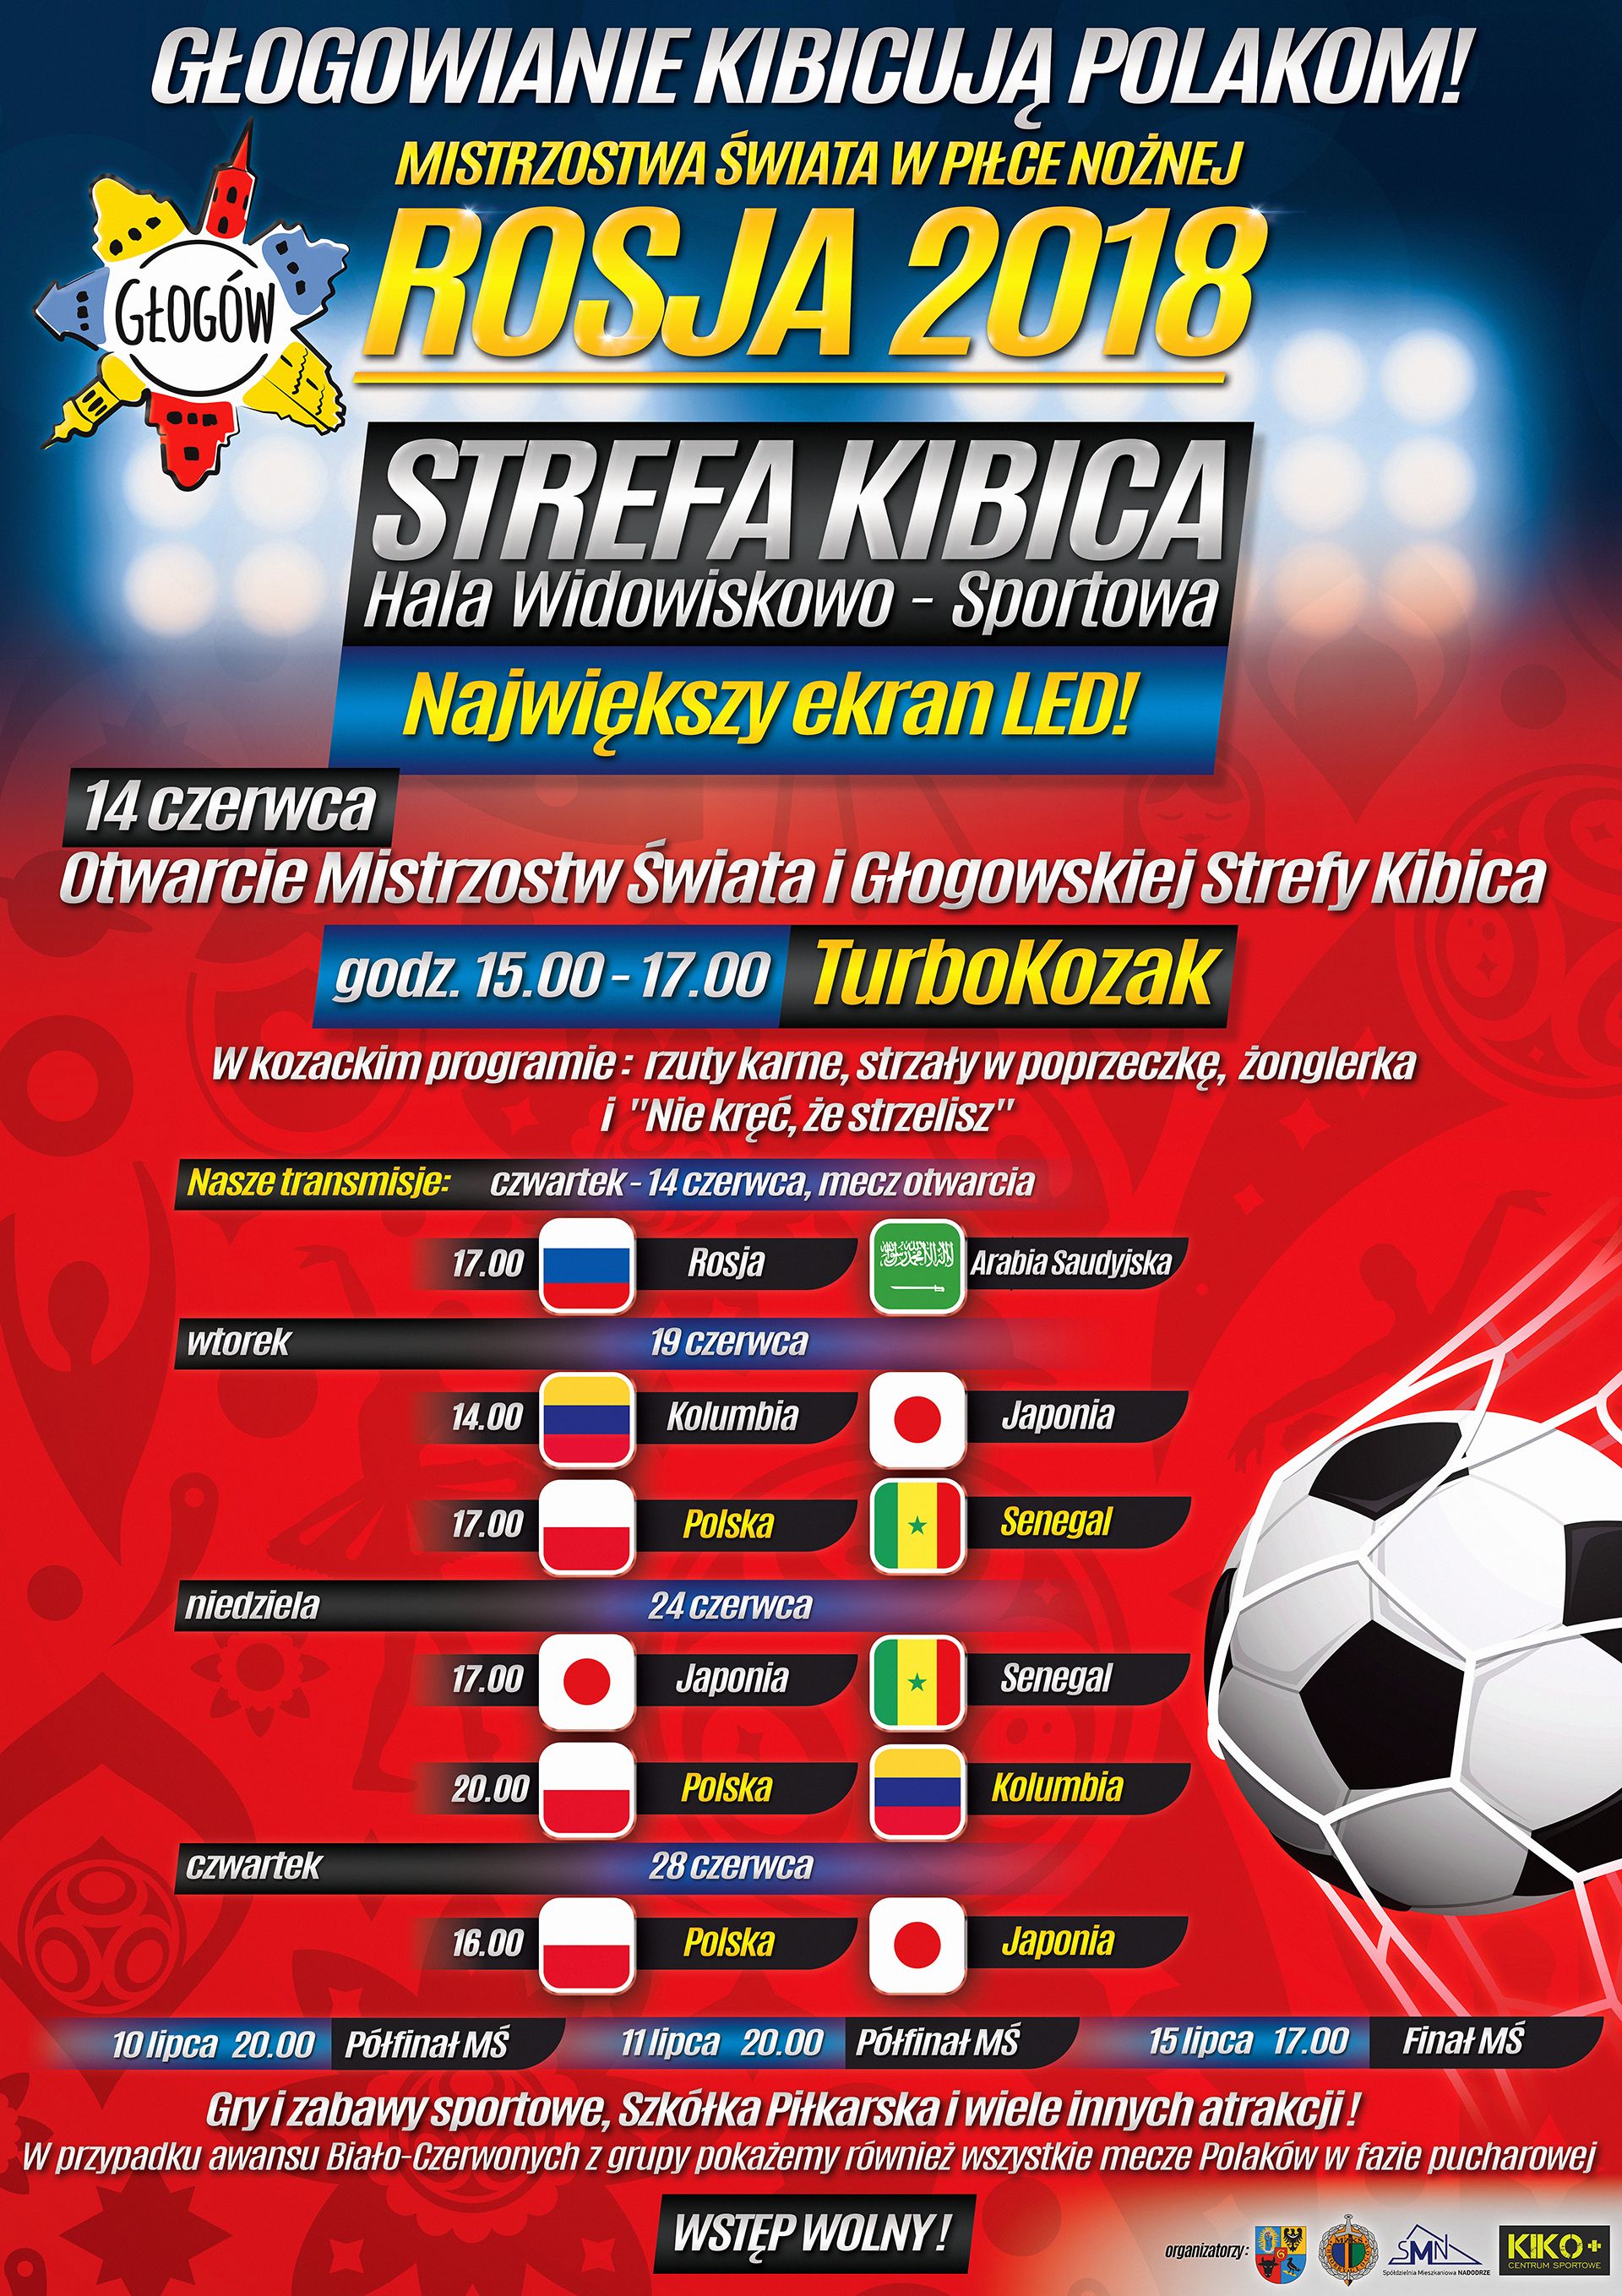 Ilustracja do artykuły: Mistrzostwa Świata w piłce nożnej - Głogowska Strefa Kibica.